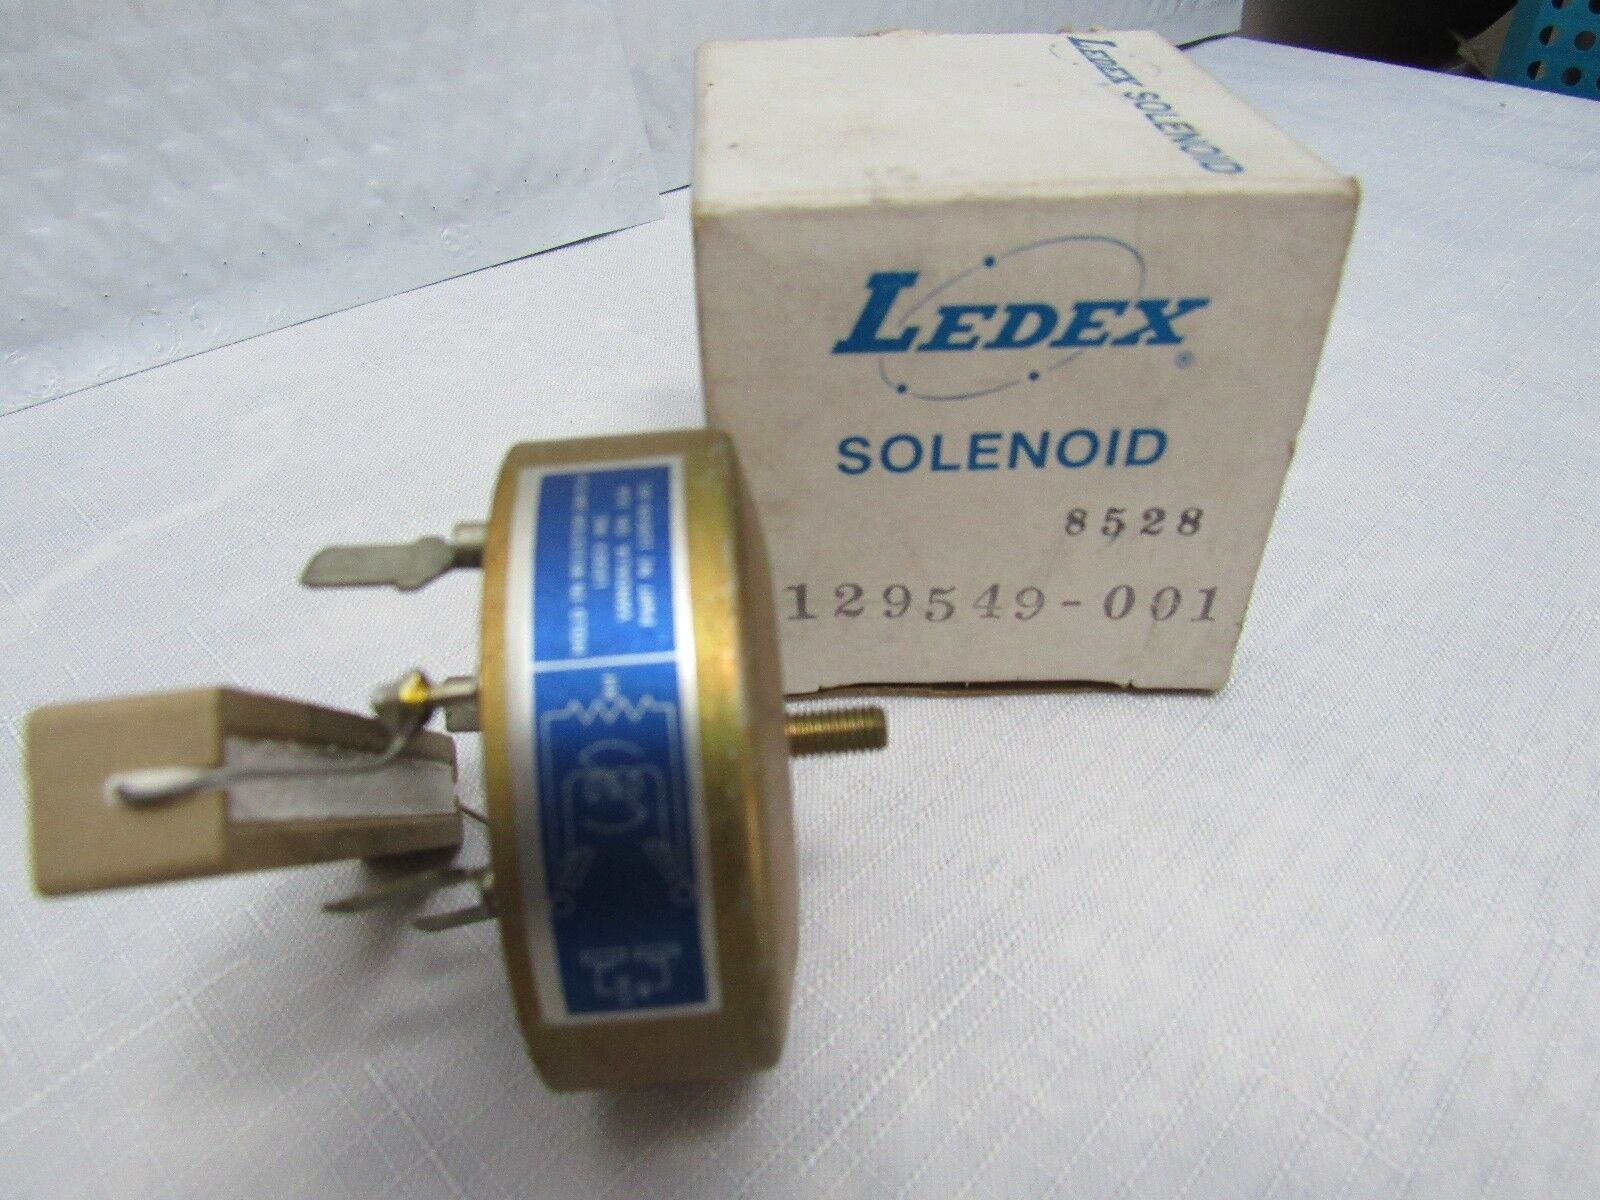 LEDEX Solenoid Switch 129549-001